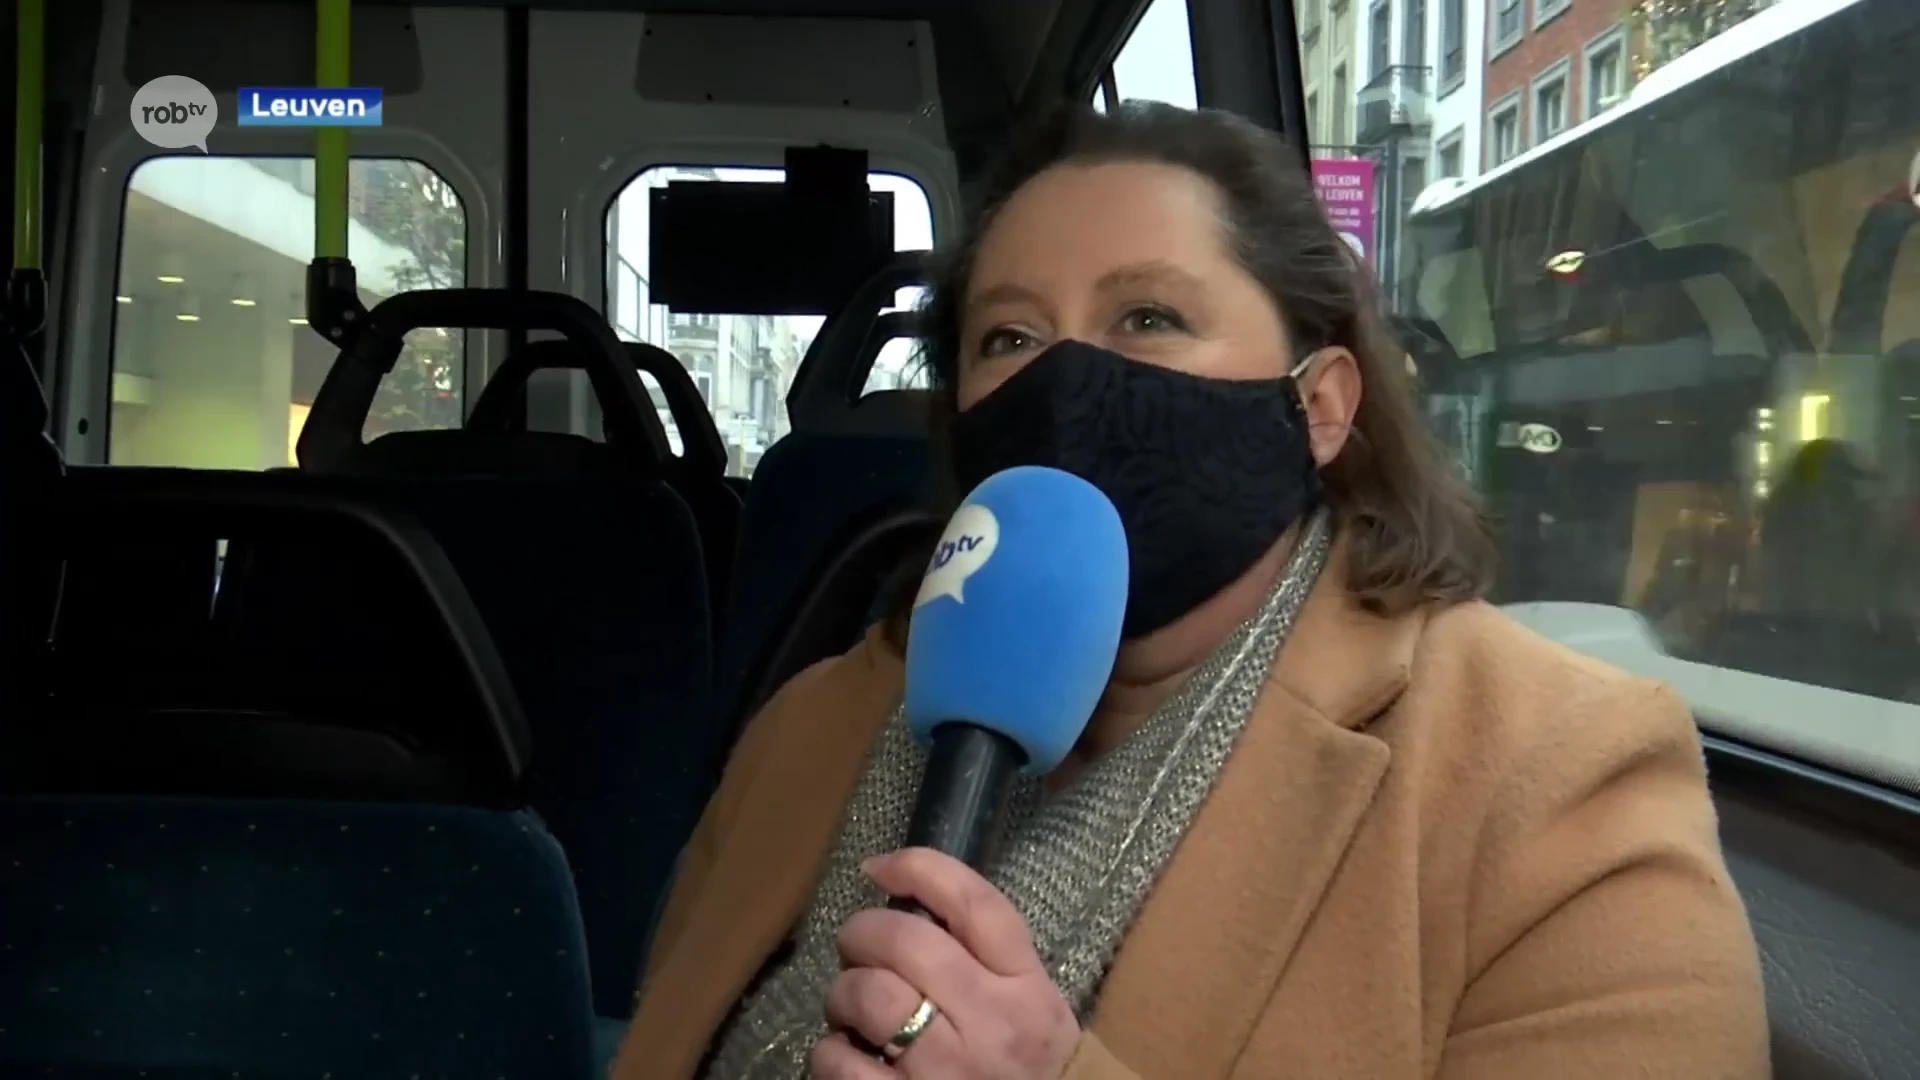 Gratis shuttlebus in Leuven is nog onbekend, maar wel geliefd: "Een gewoon busticketje kost toch 2 euro"